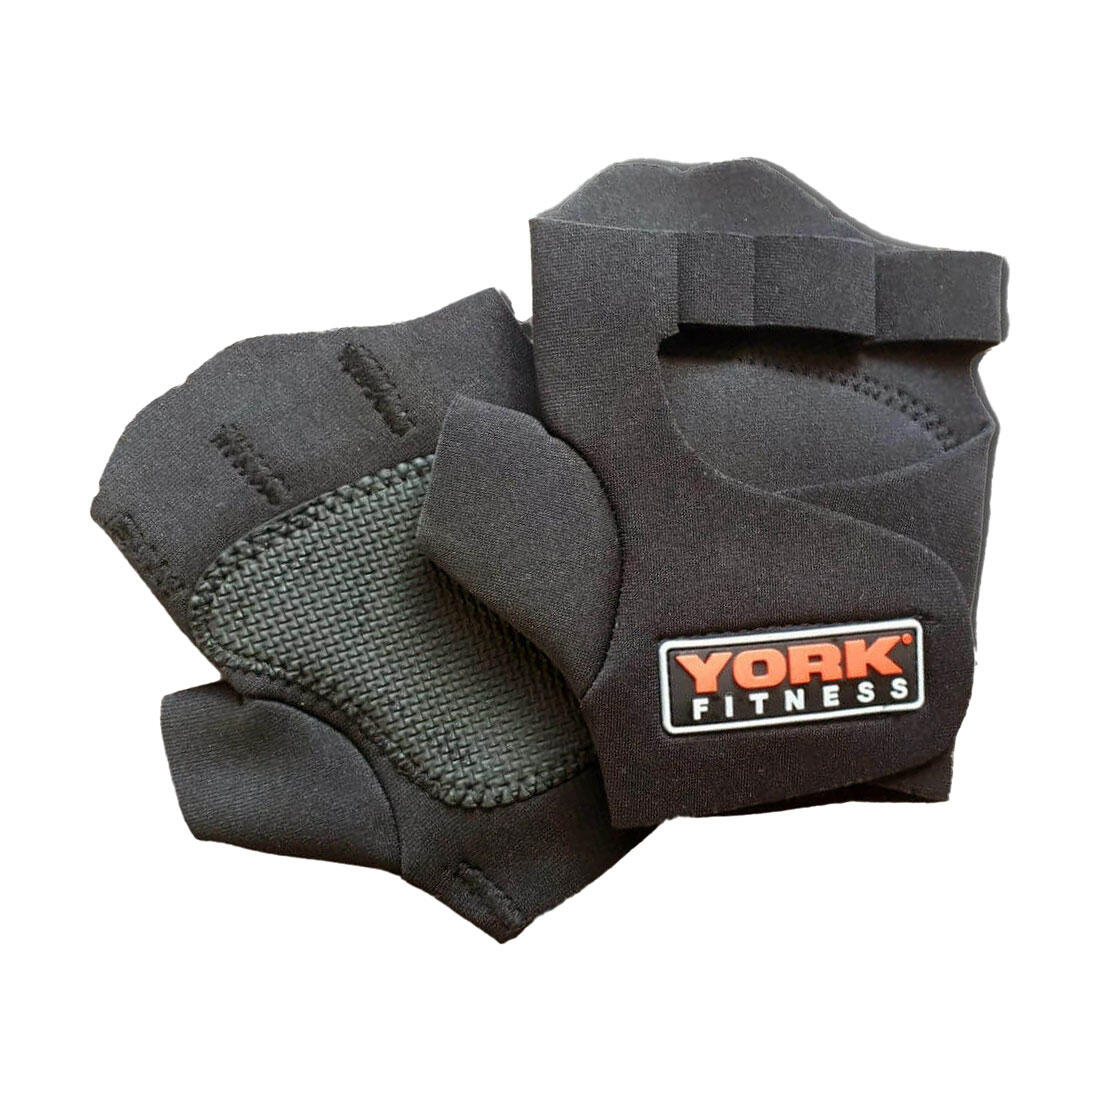 York Fitness Neoprene Gym Gloves 2/3